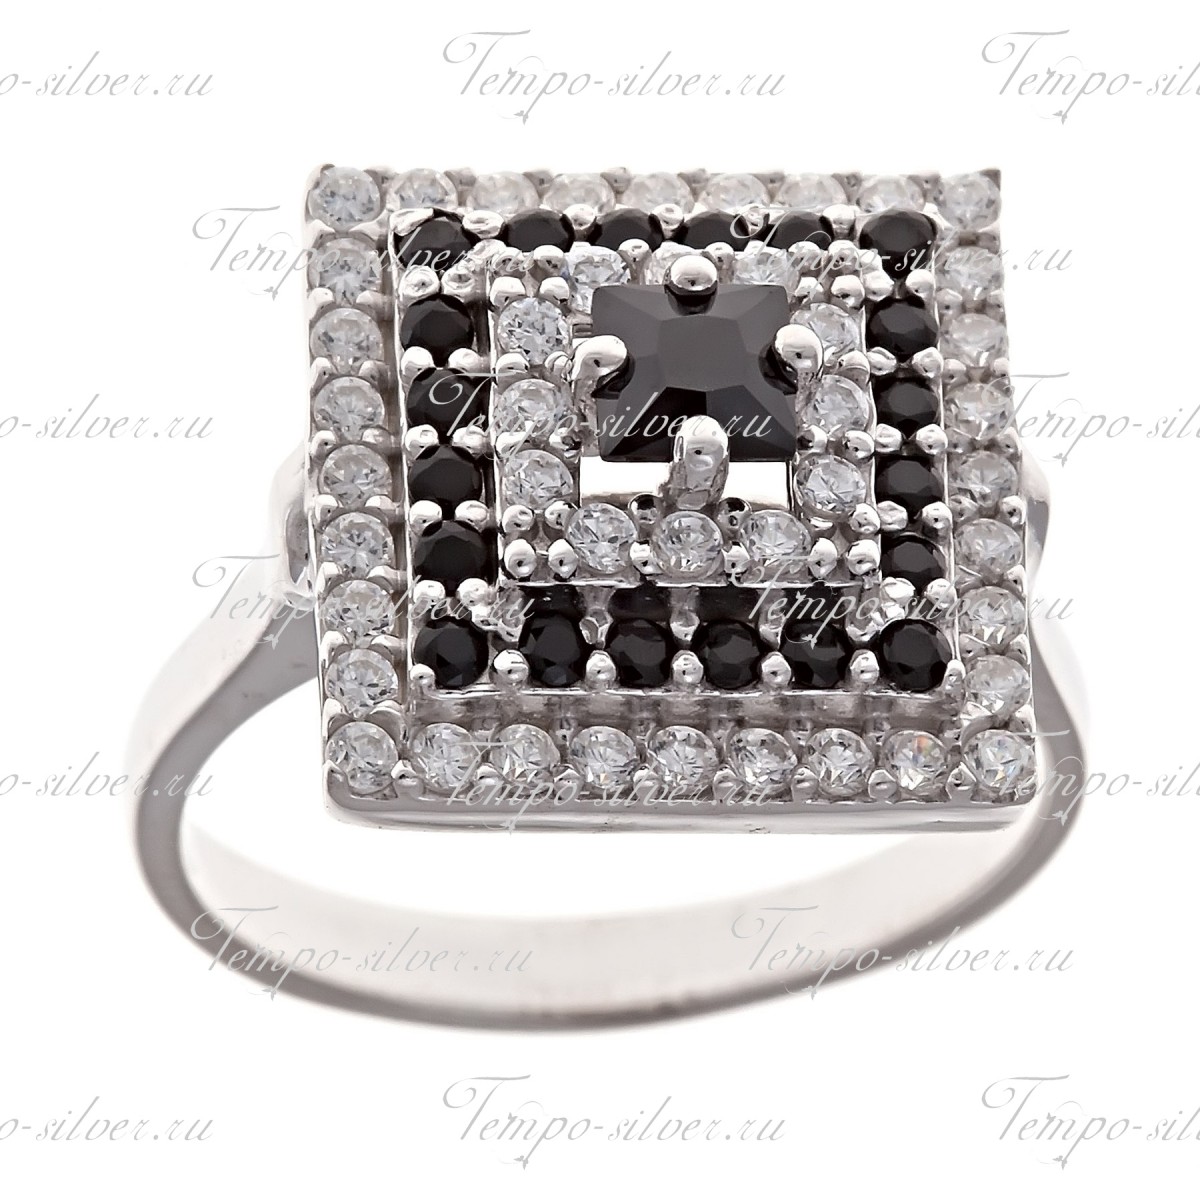 Кольцо серебряное квадратной формы с черными камнями